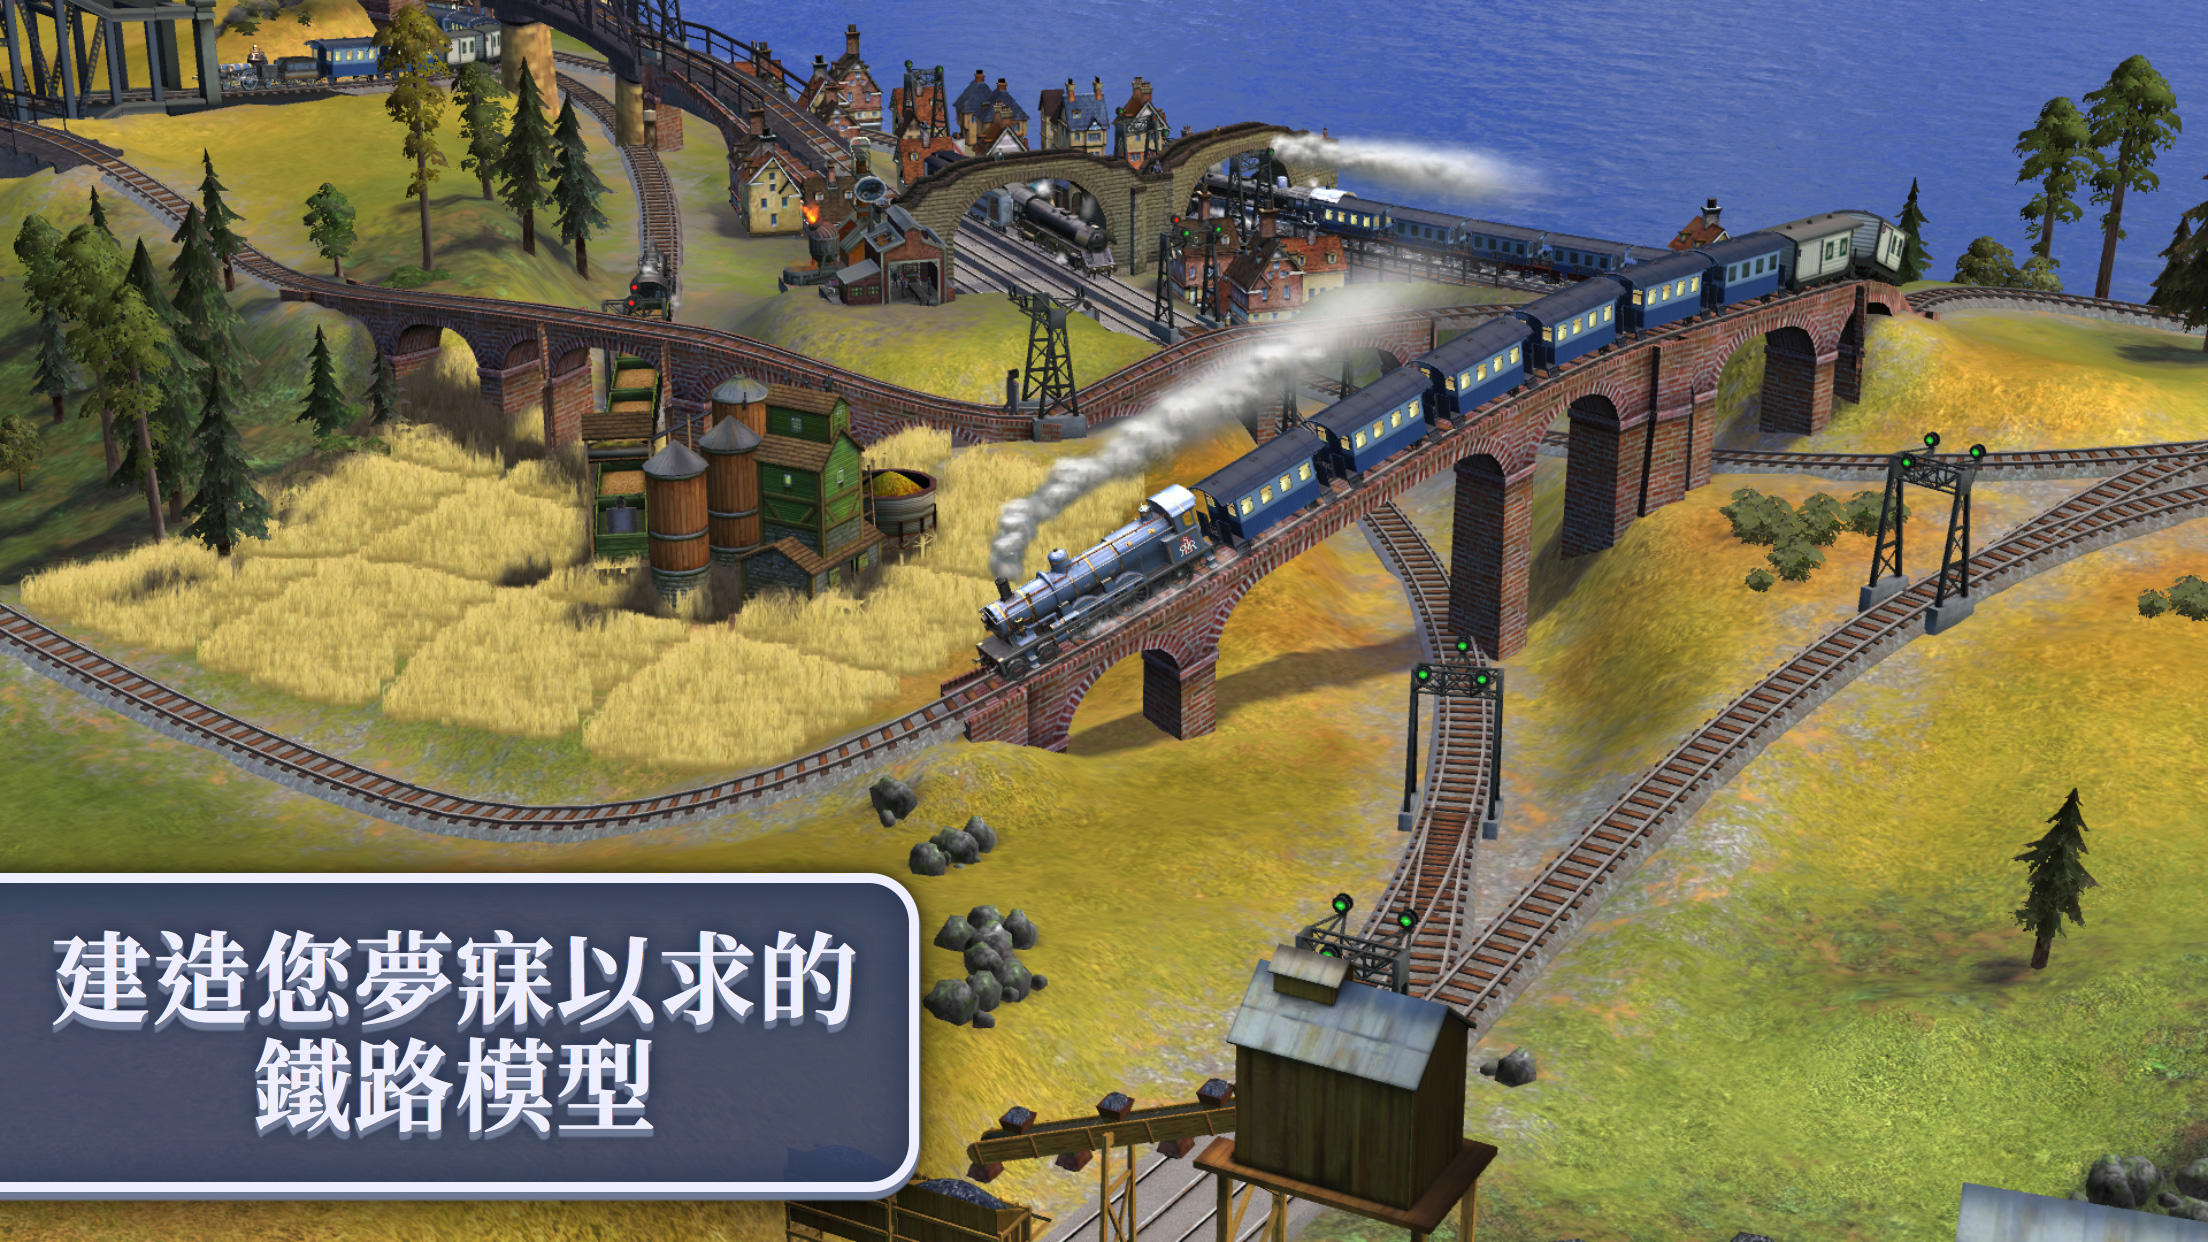 Sid Meier's Railroads!遊戲截圖